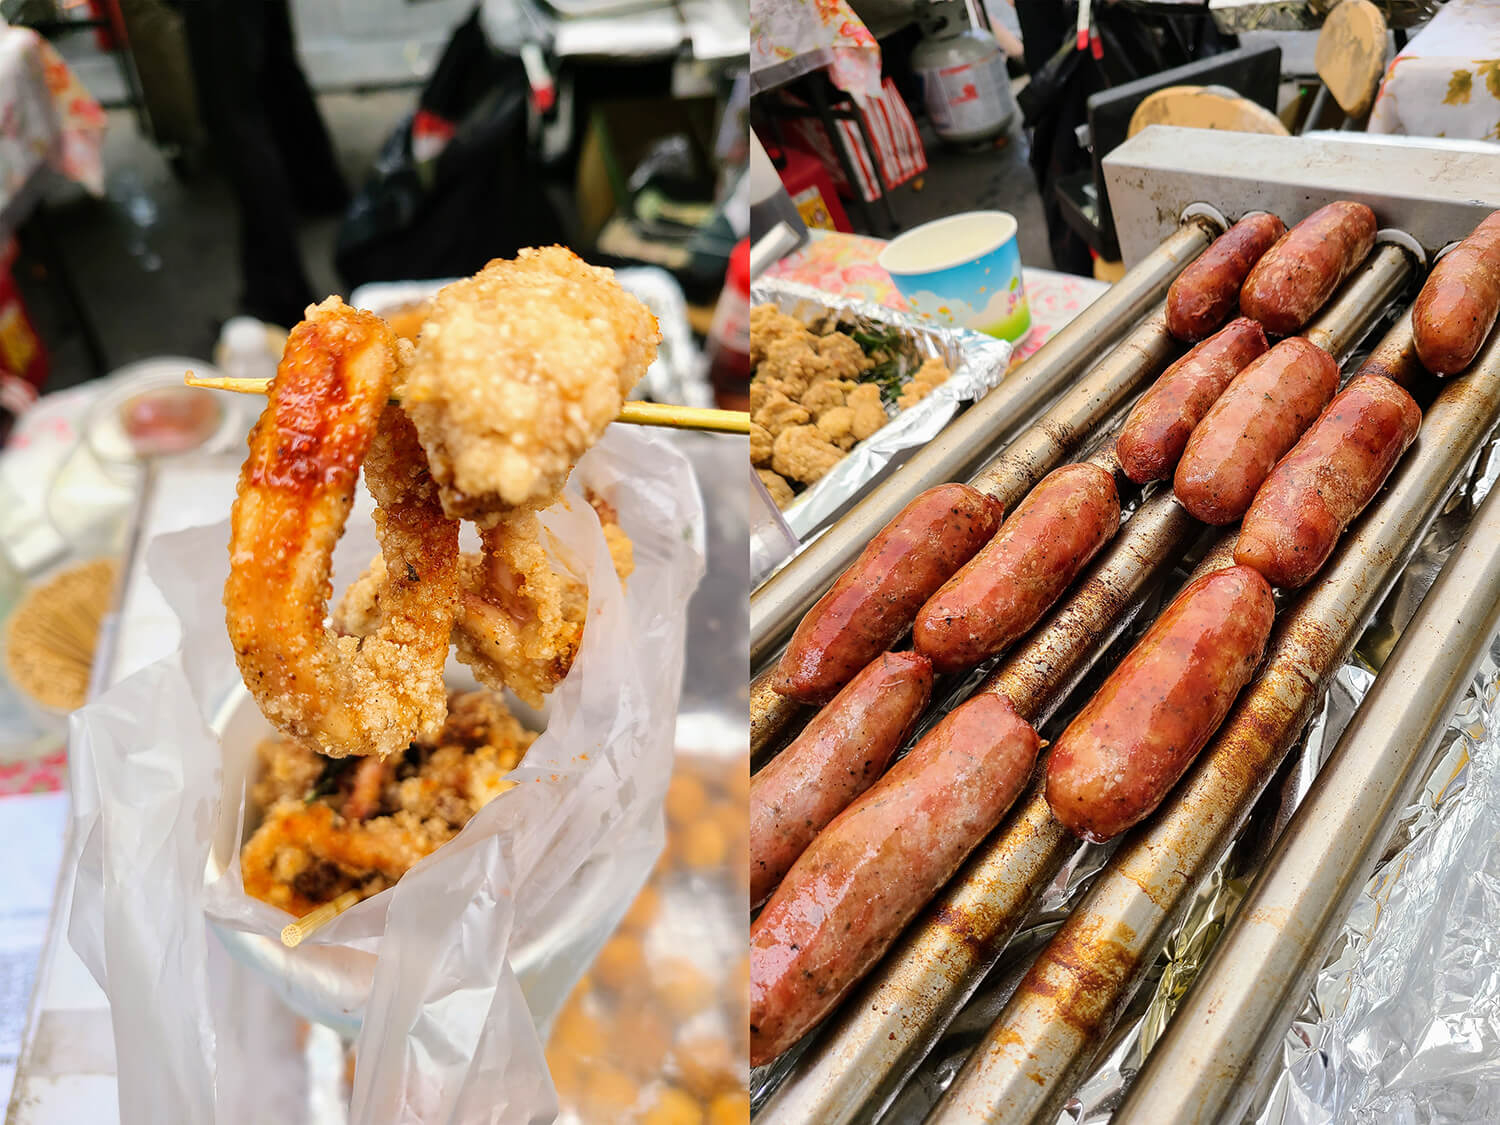 Taiwanese Yummy @ Grand Bazaar - Fried calamari